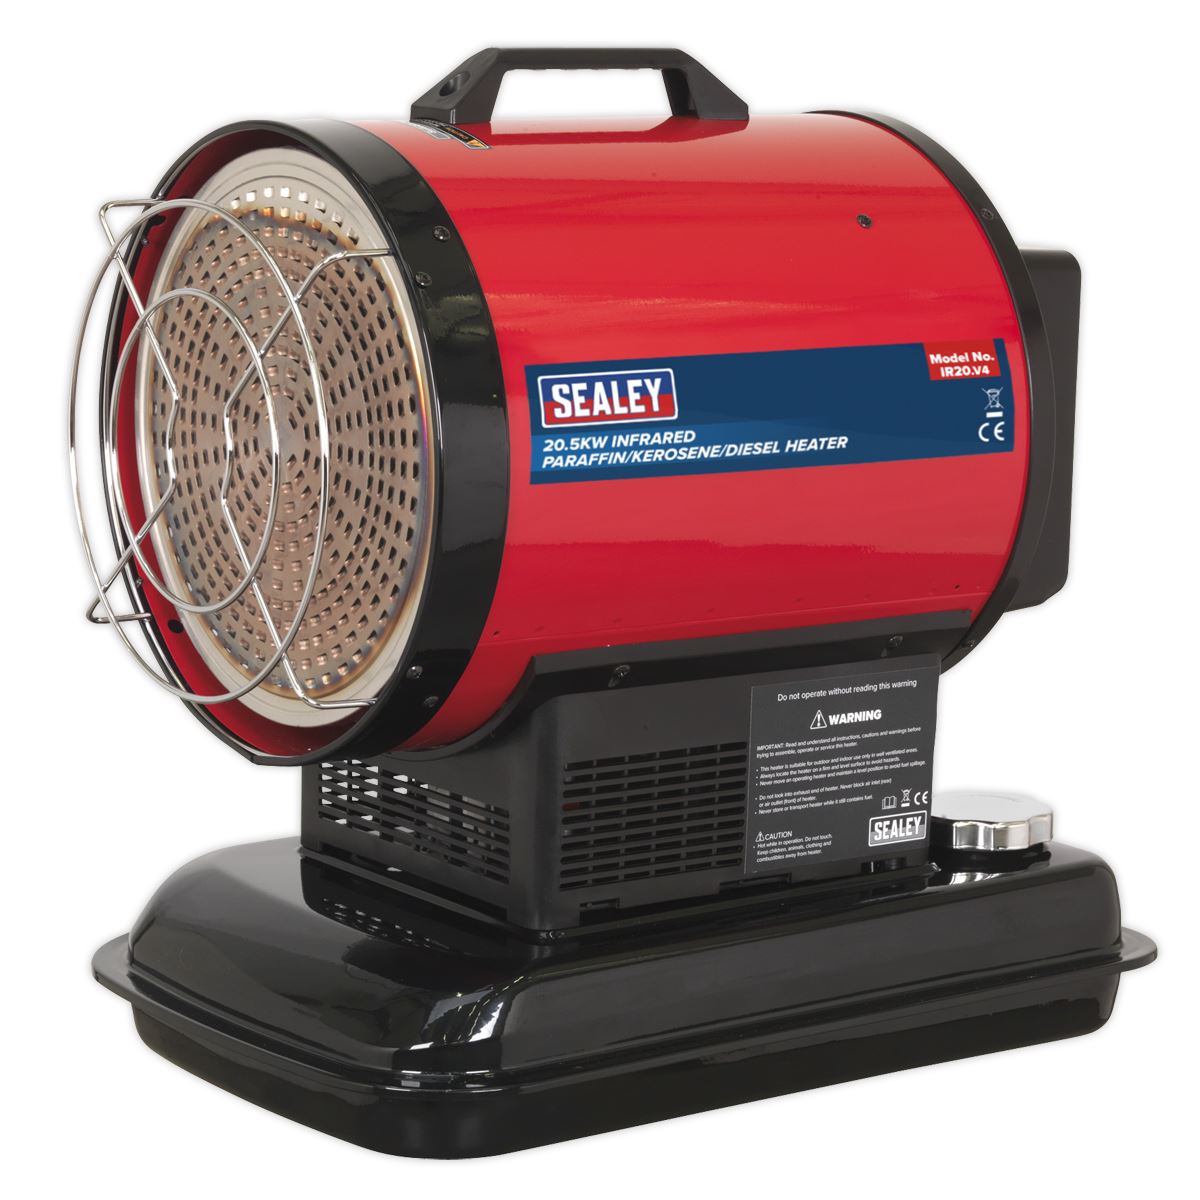 Sealey Infrared Space Warmer® Paraffin/Kerosene/Diesel Heater 70,000Btu/hr